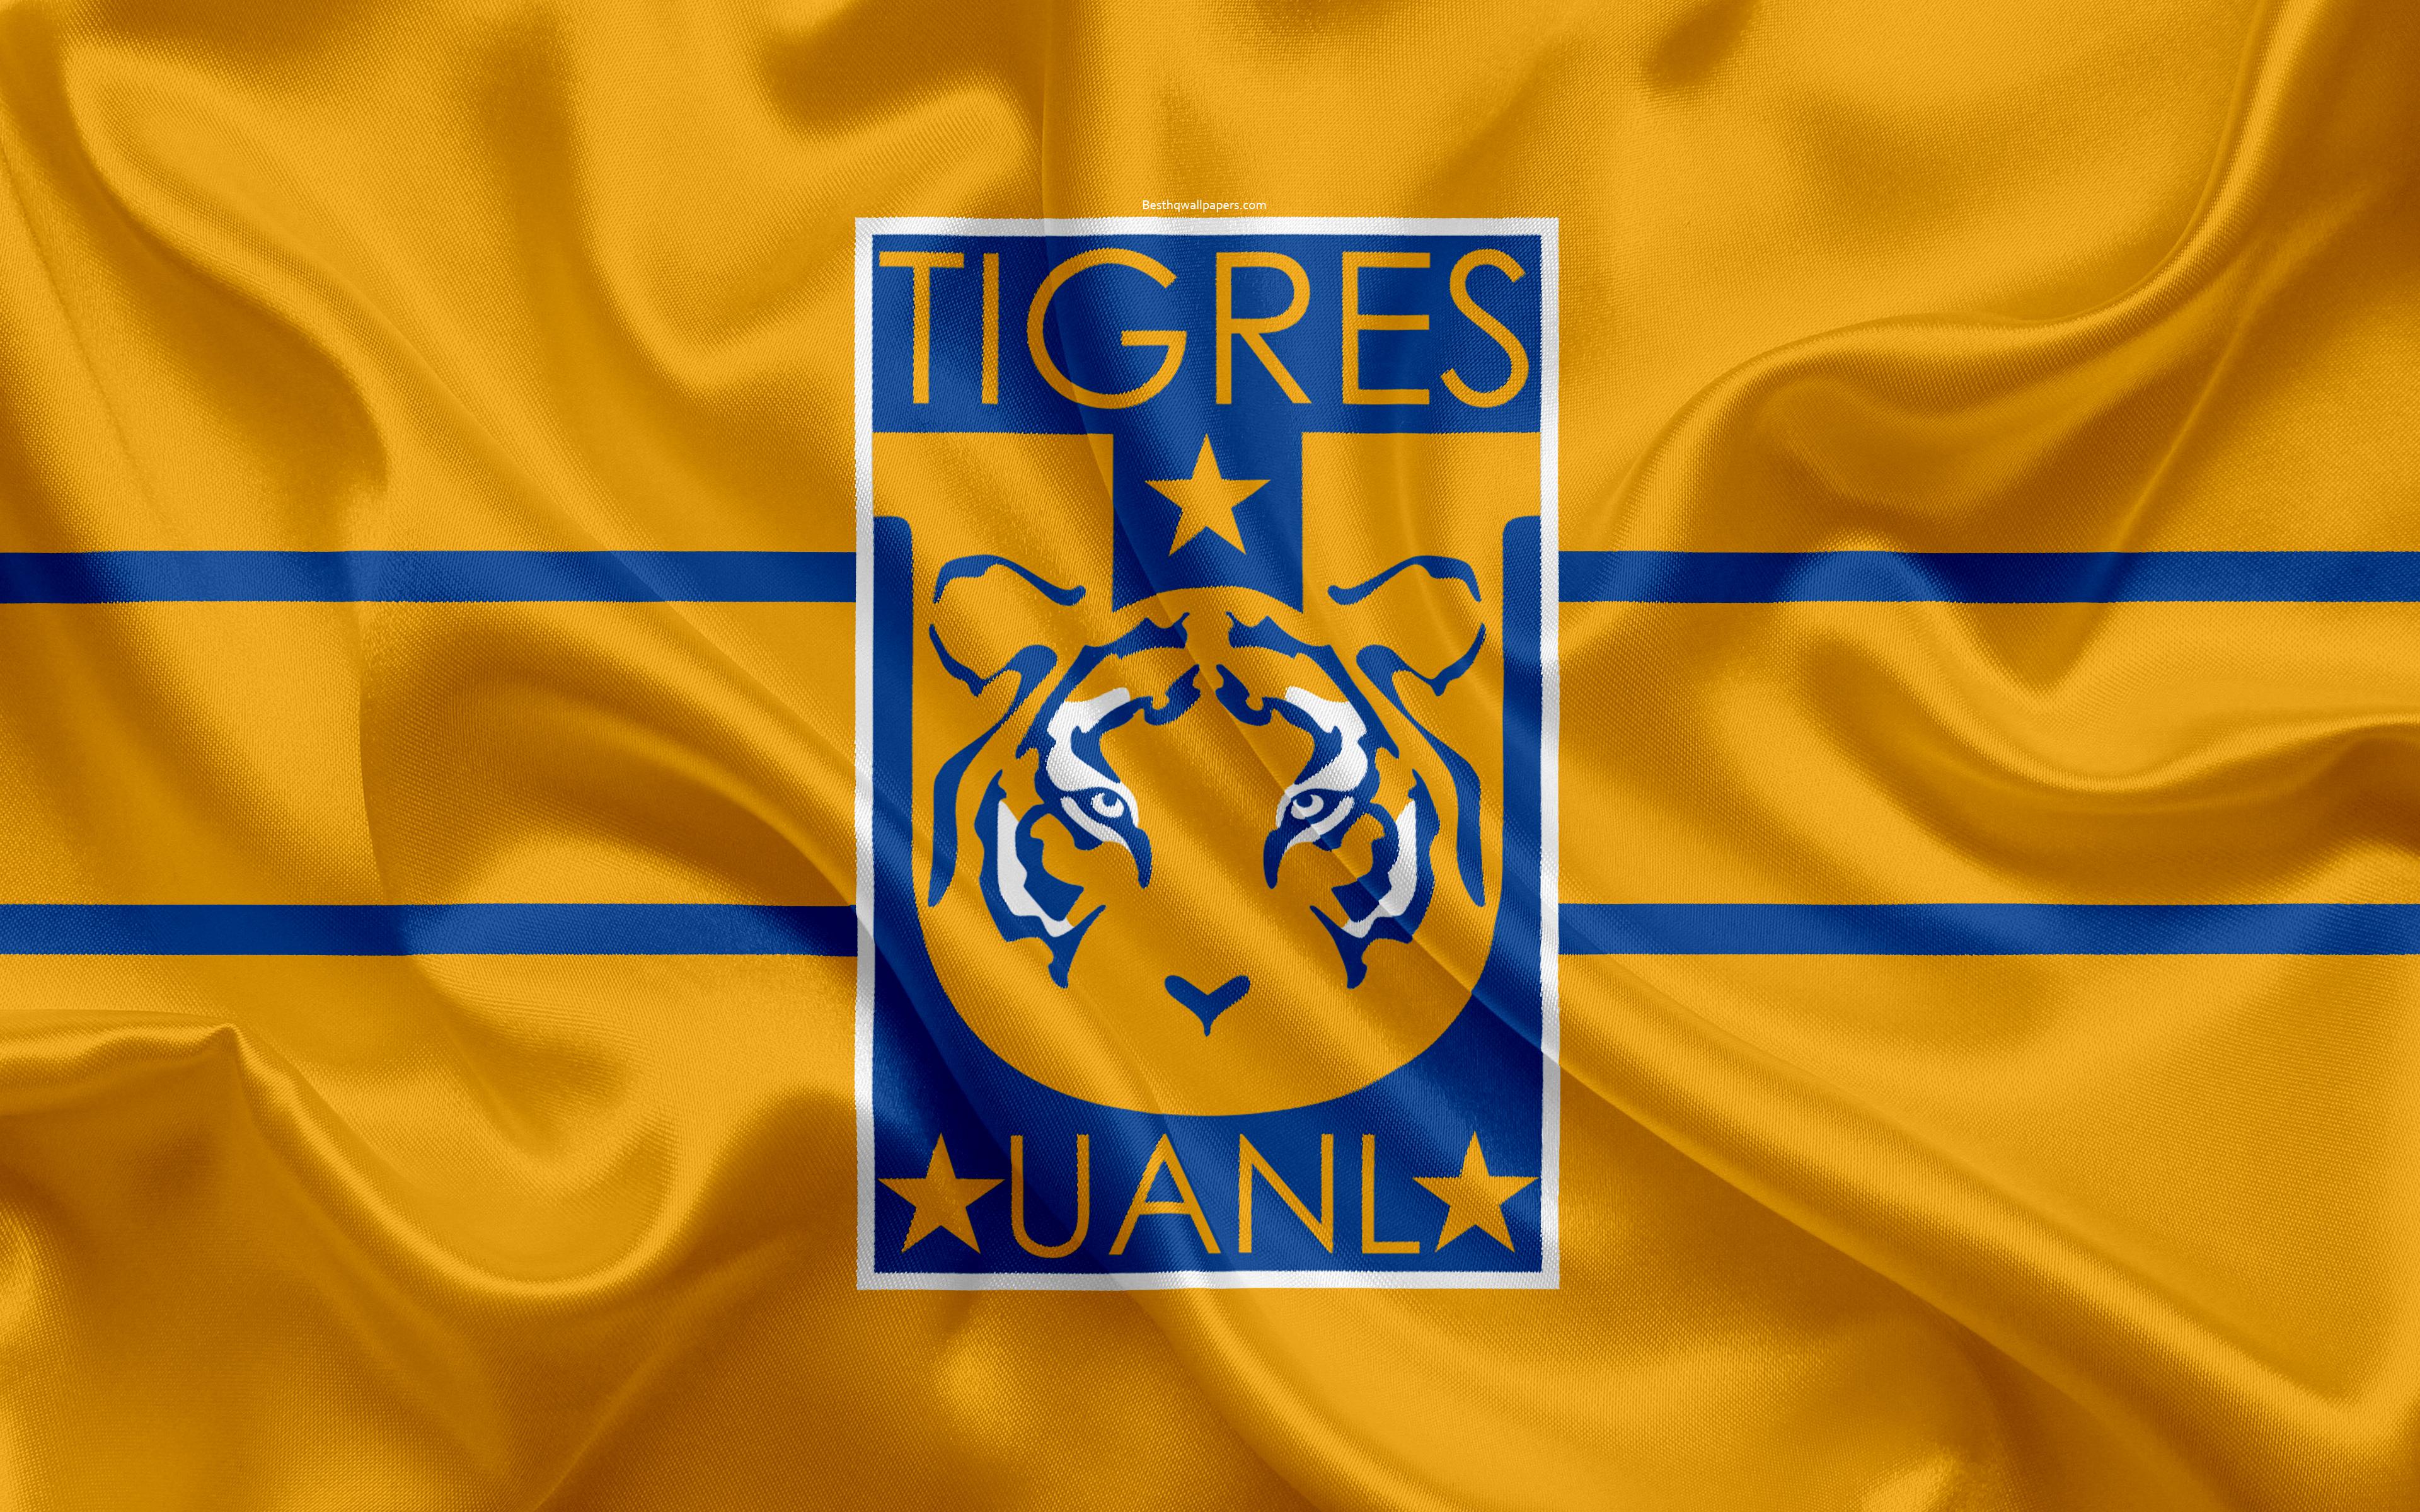 Uanl Tigres Fc, 4k, Mexican Football Club, Emblem, - Tigres Uanl , HD Wallpaper & Backgrounds